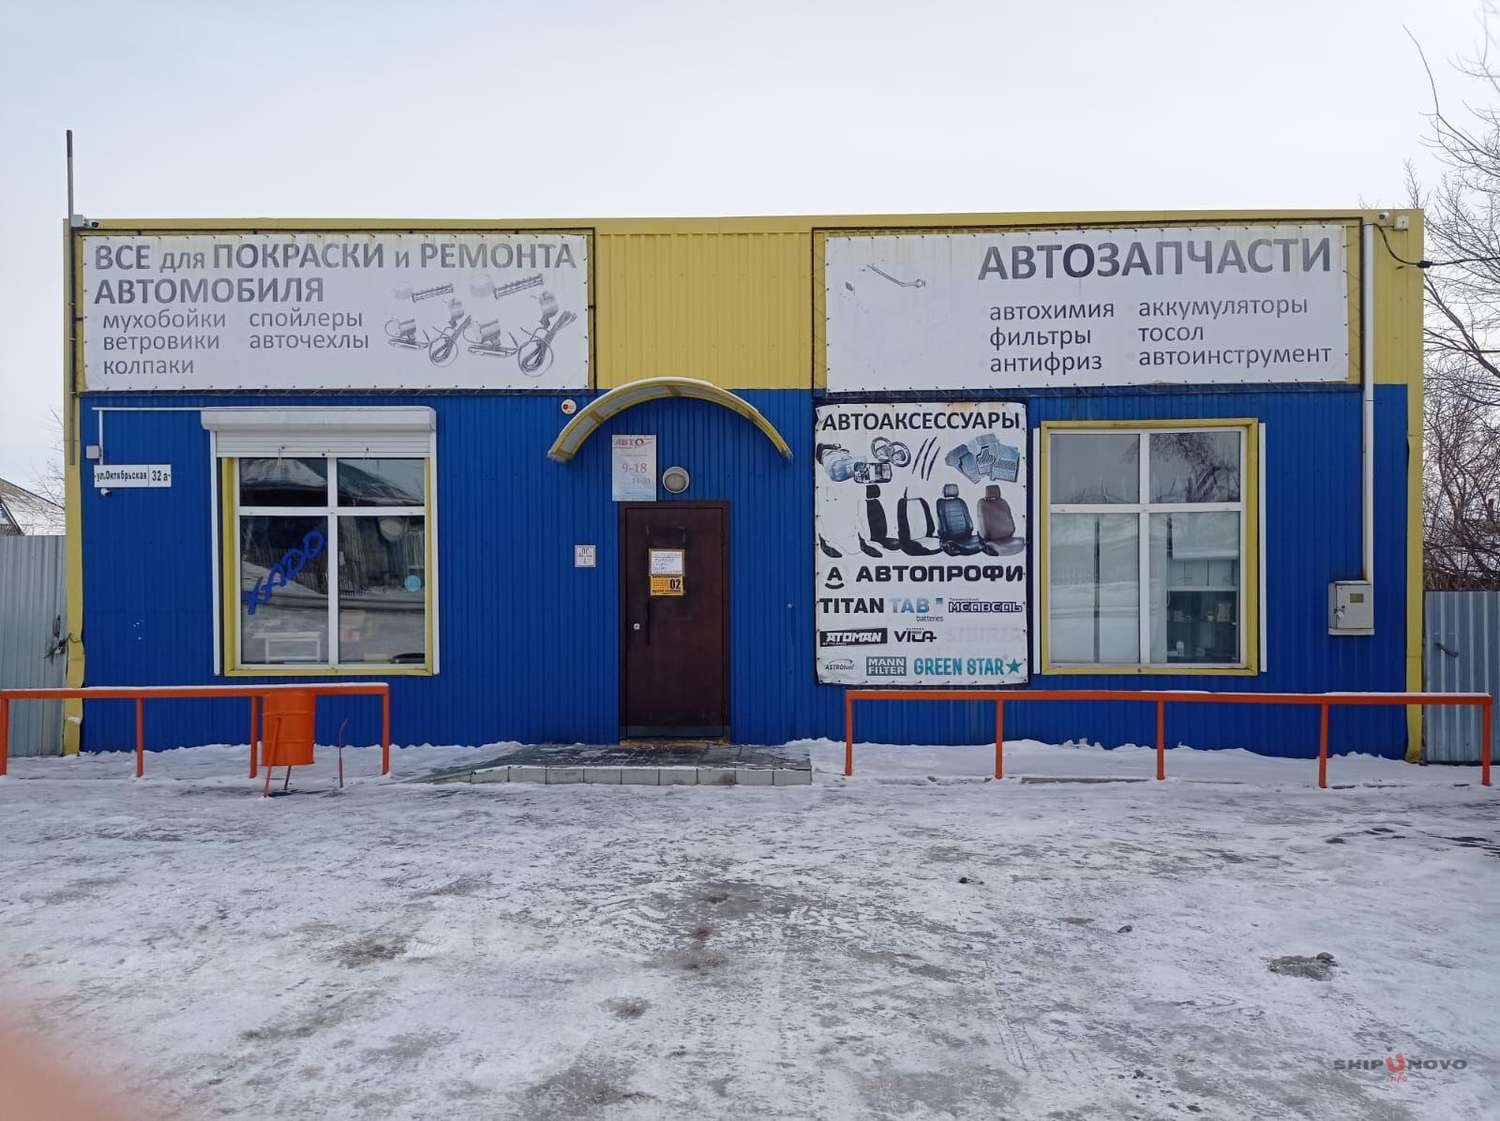 Продам действующий магазин автомобильных товаров в Шипуново